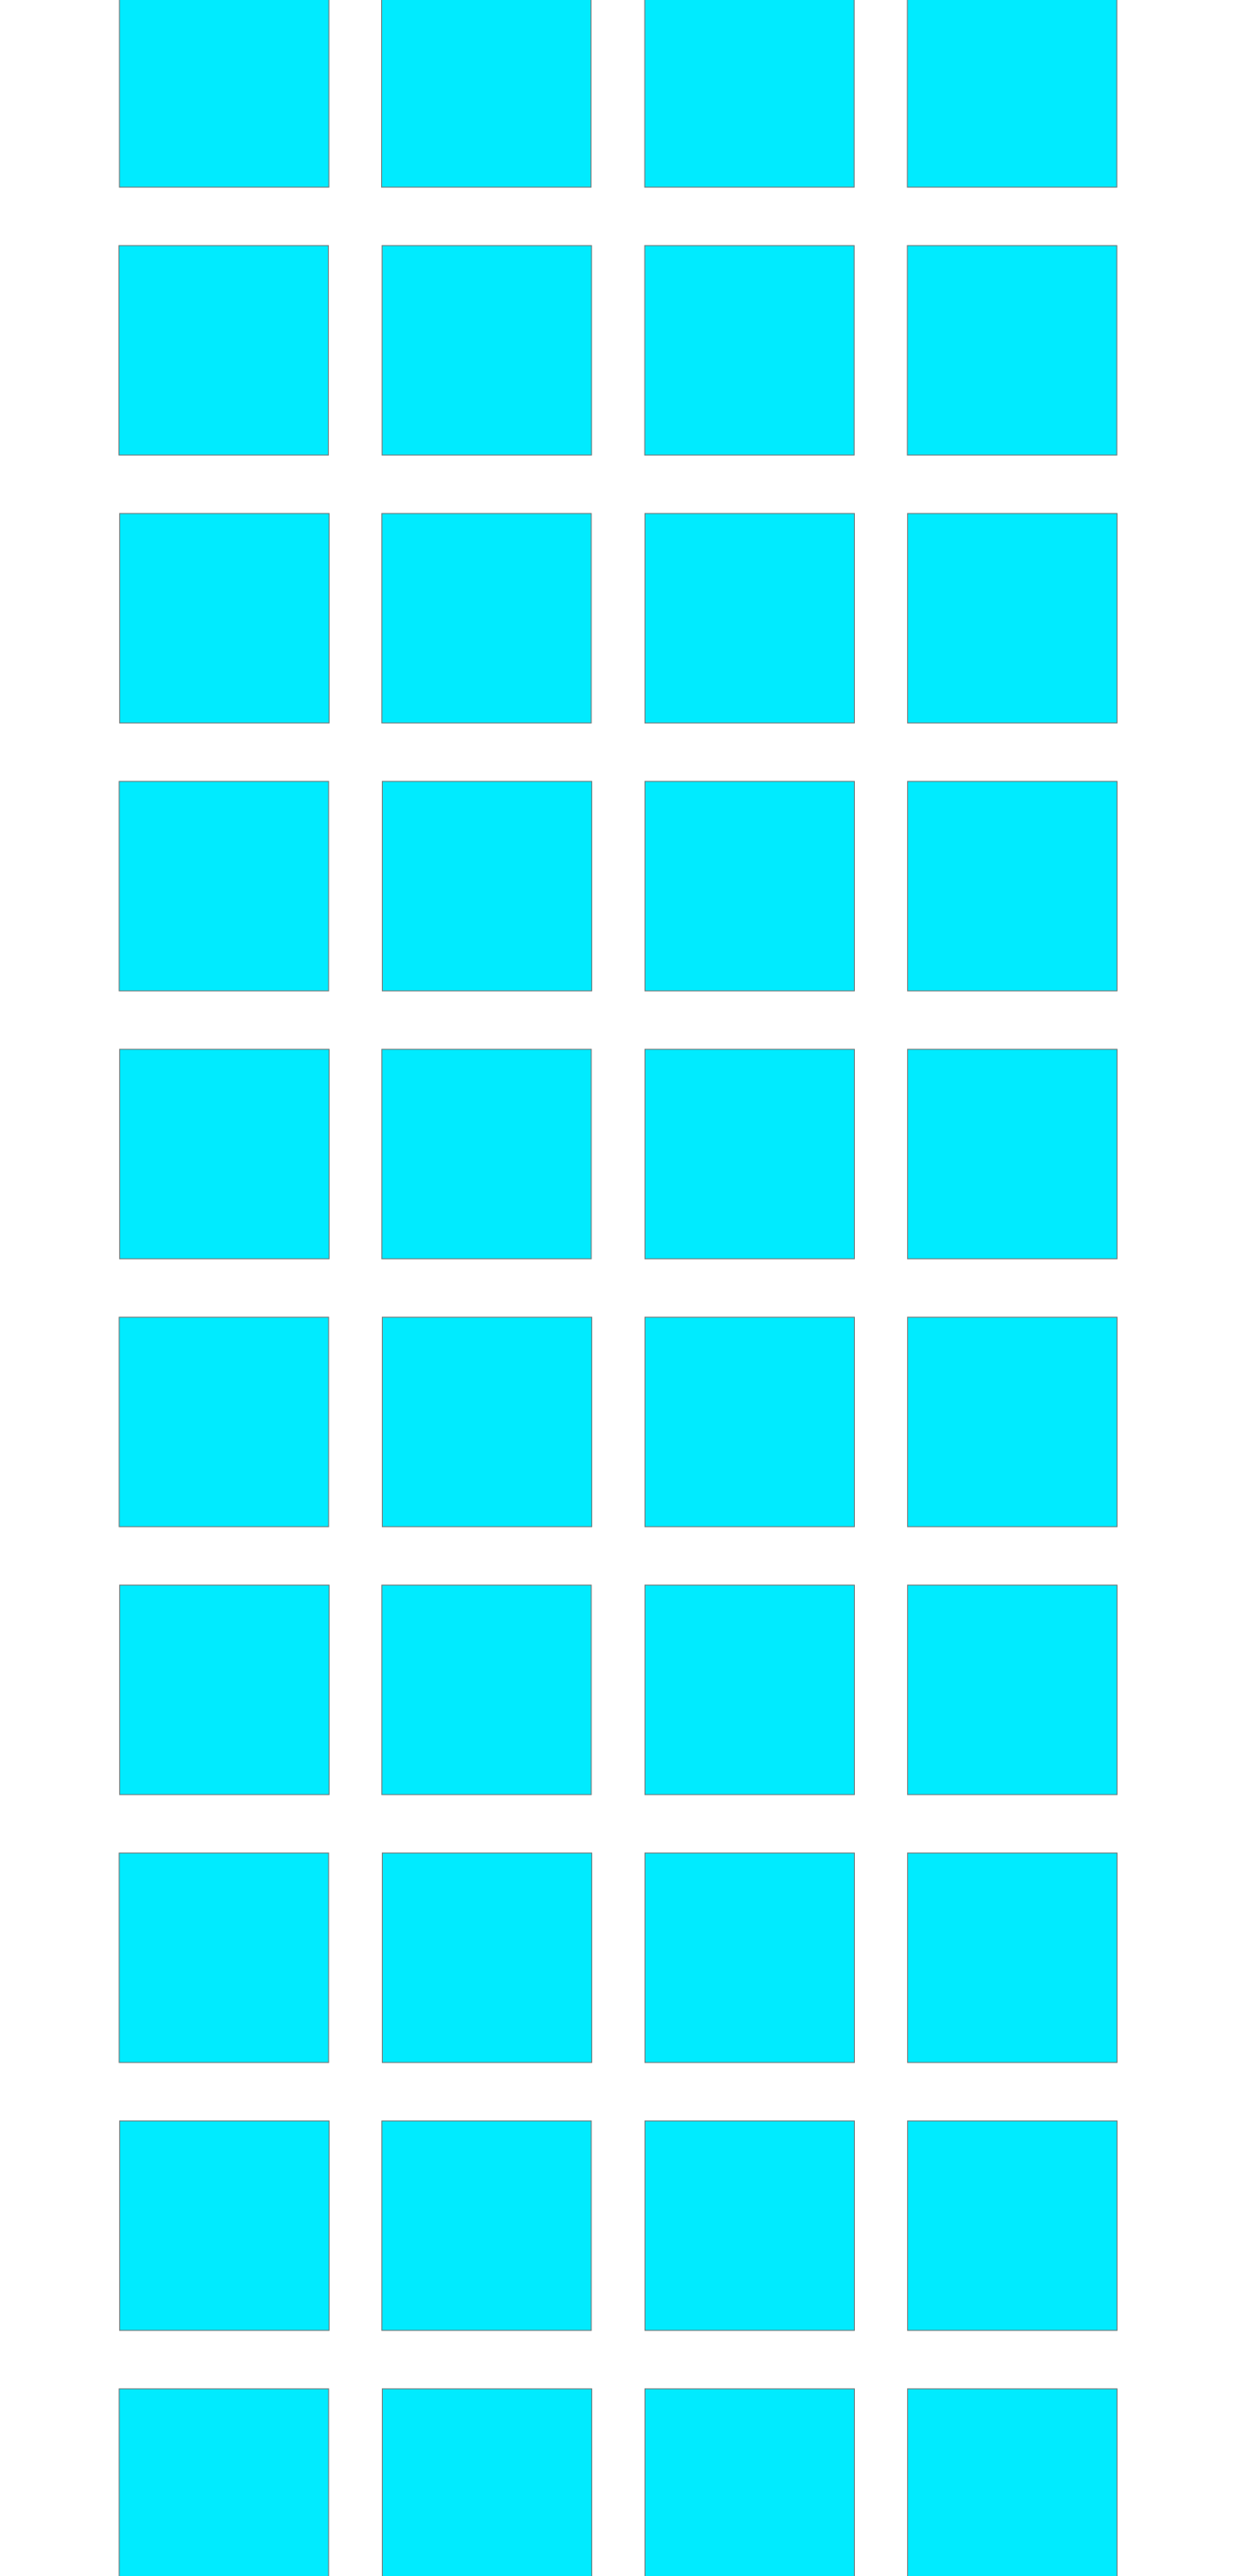 fourth grid layout